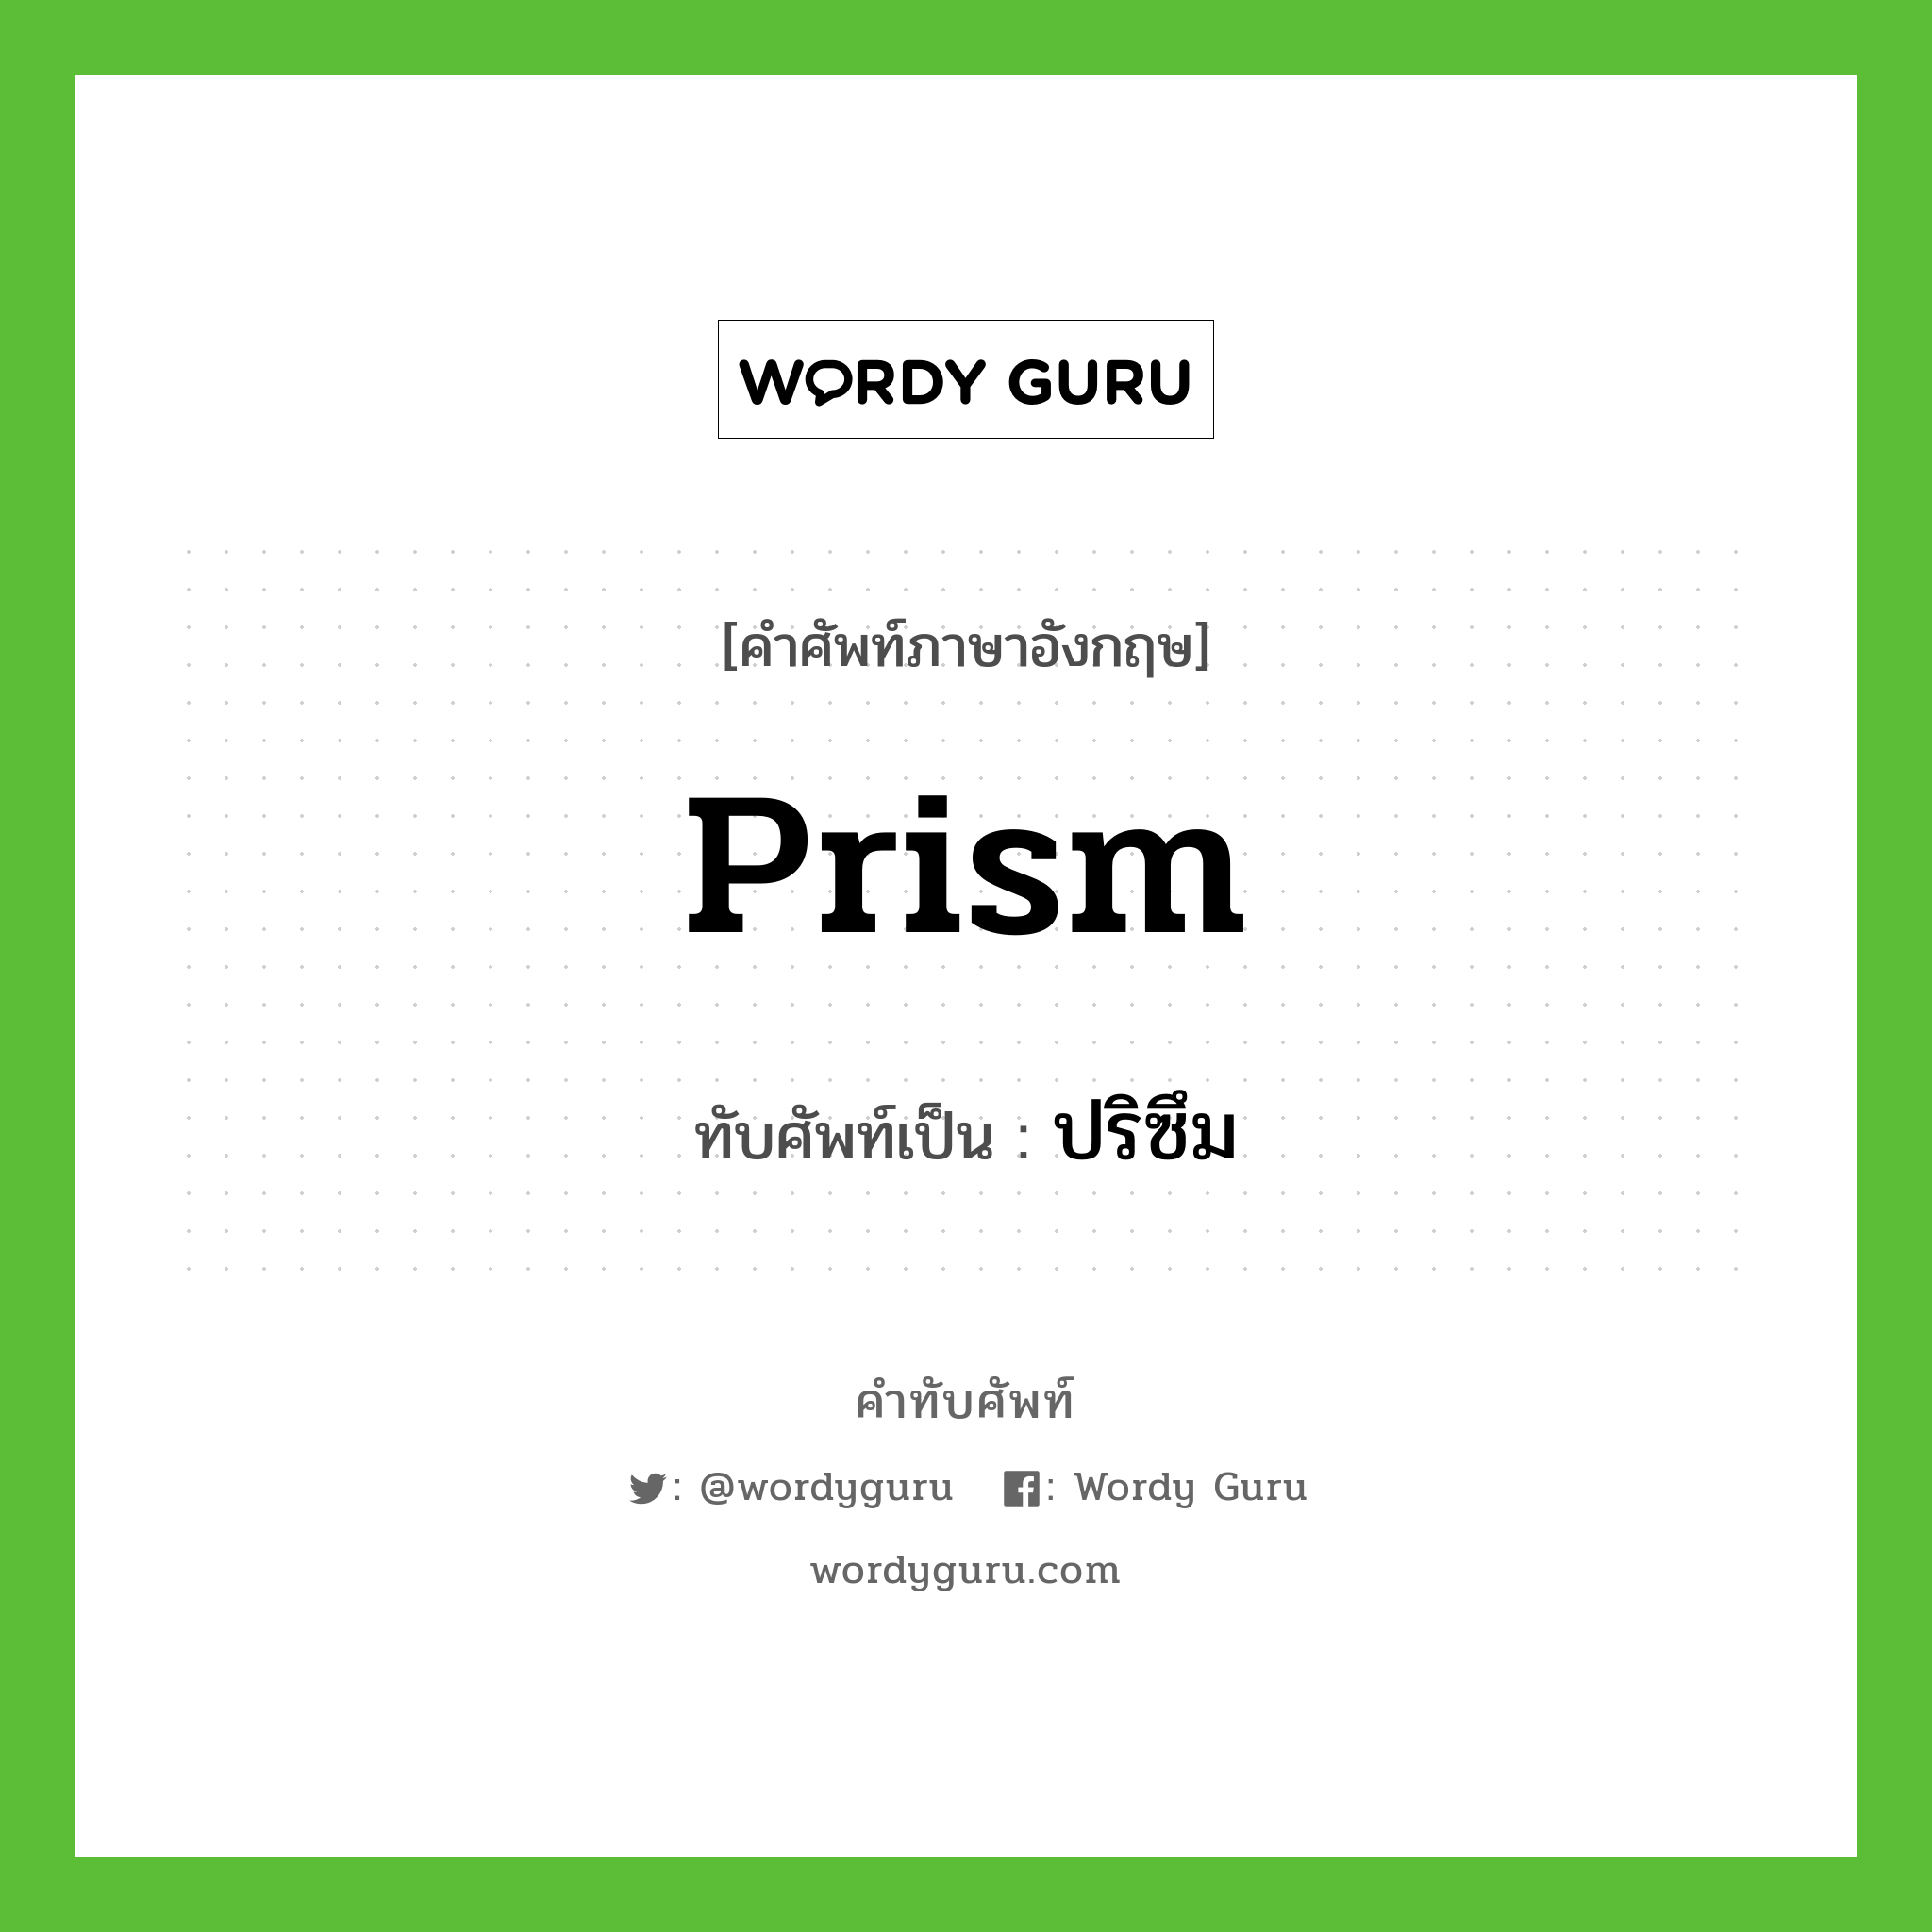 prism เขียนเป็นคำไทยว่าอะไร?, คำศัพท์ภาษาอังกฤษ prism ทับศัพท์เป็น ปริซึม